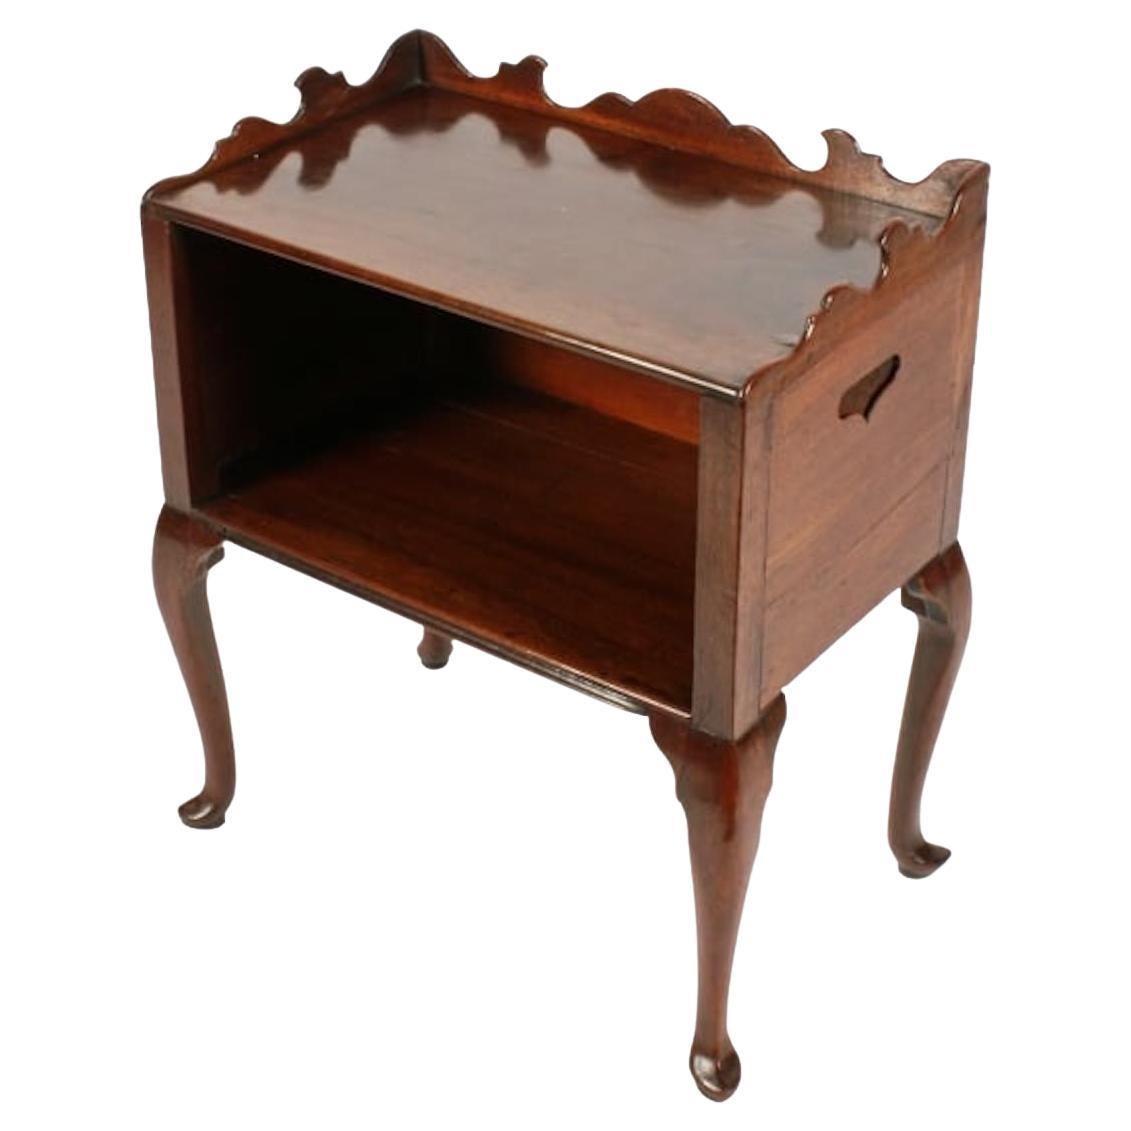 meuble d'appoint hollandais du 18e siècle

Un meuble d'appoint hollandais en acajou de la fin du 18e ou du début du 19e siècle.

Le cabinet repose sur quatre pieds cabriole avec des pieds 